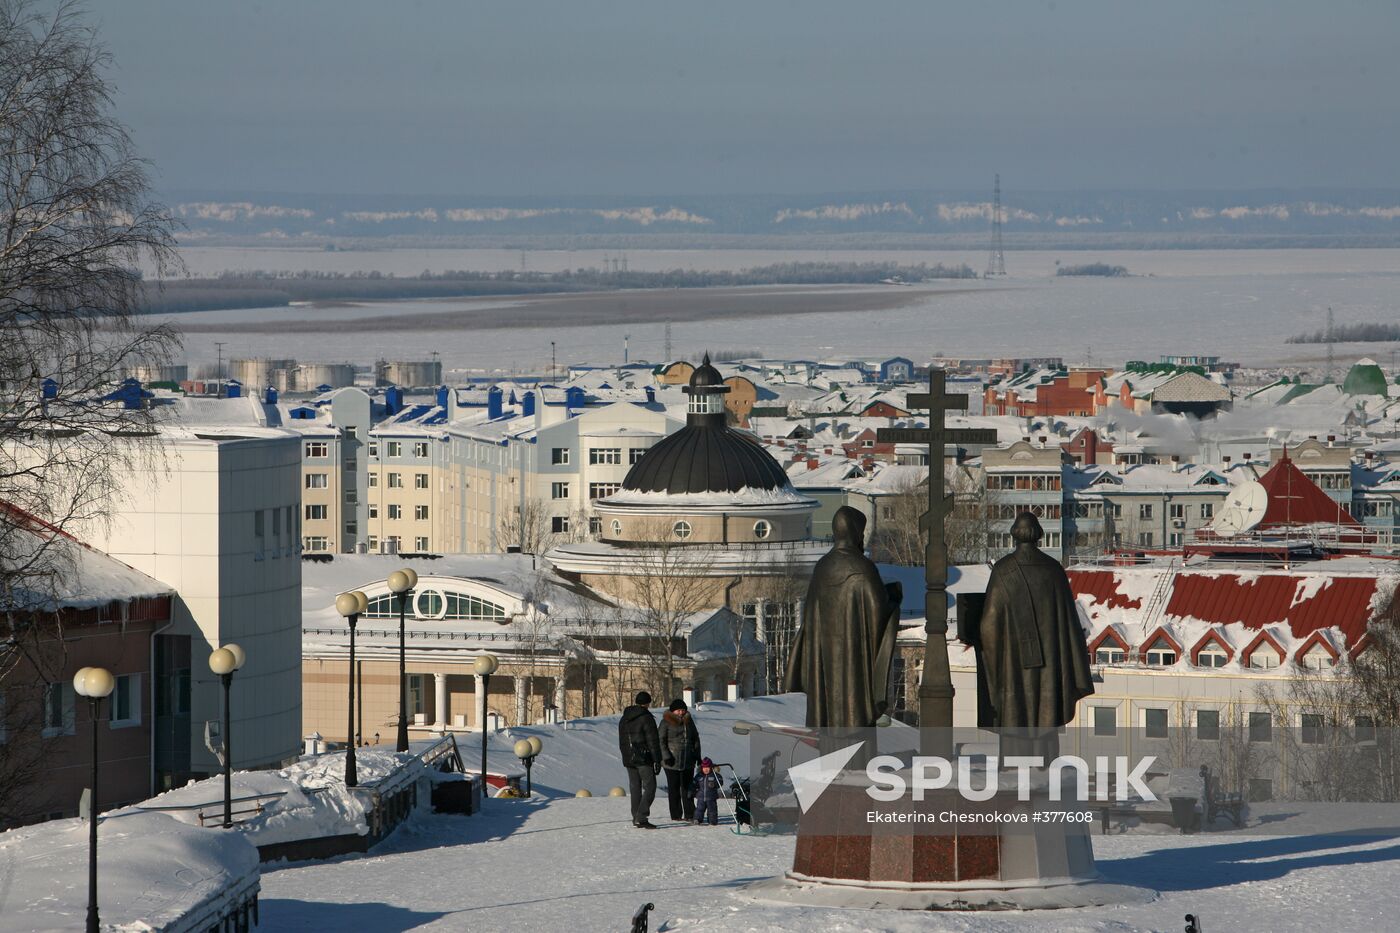 Views of Khanty-Mansiysk